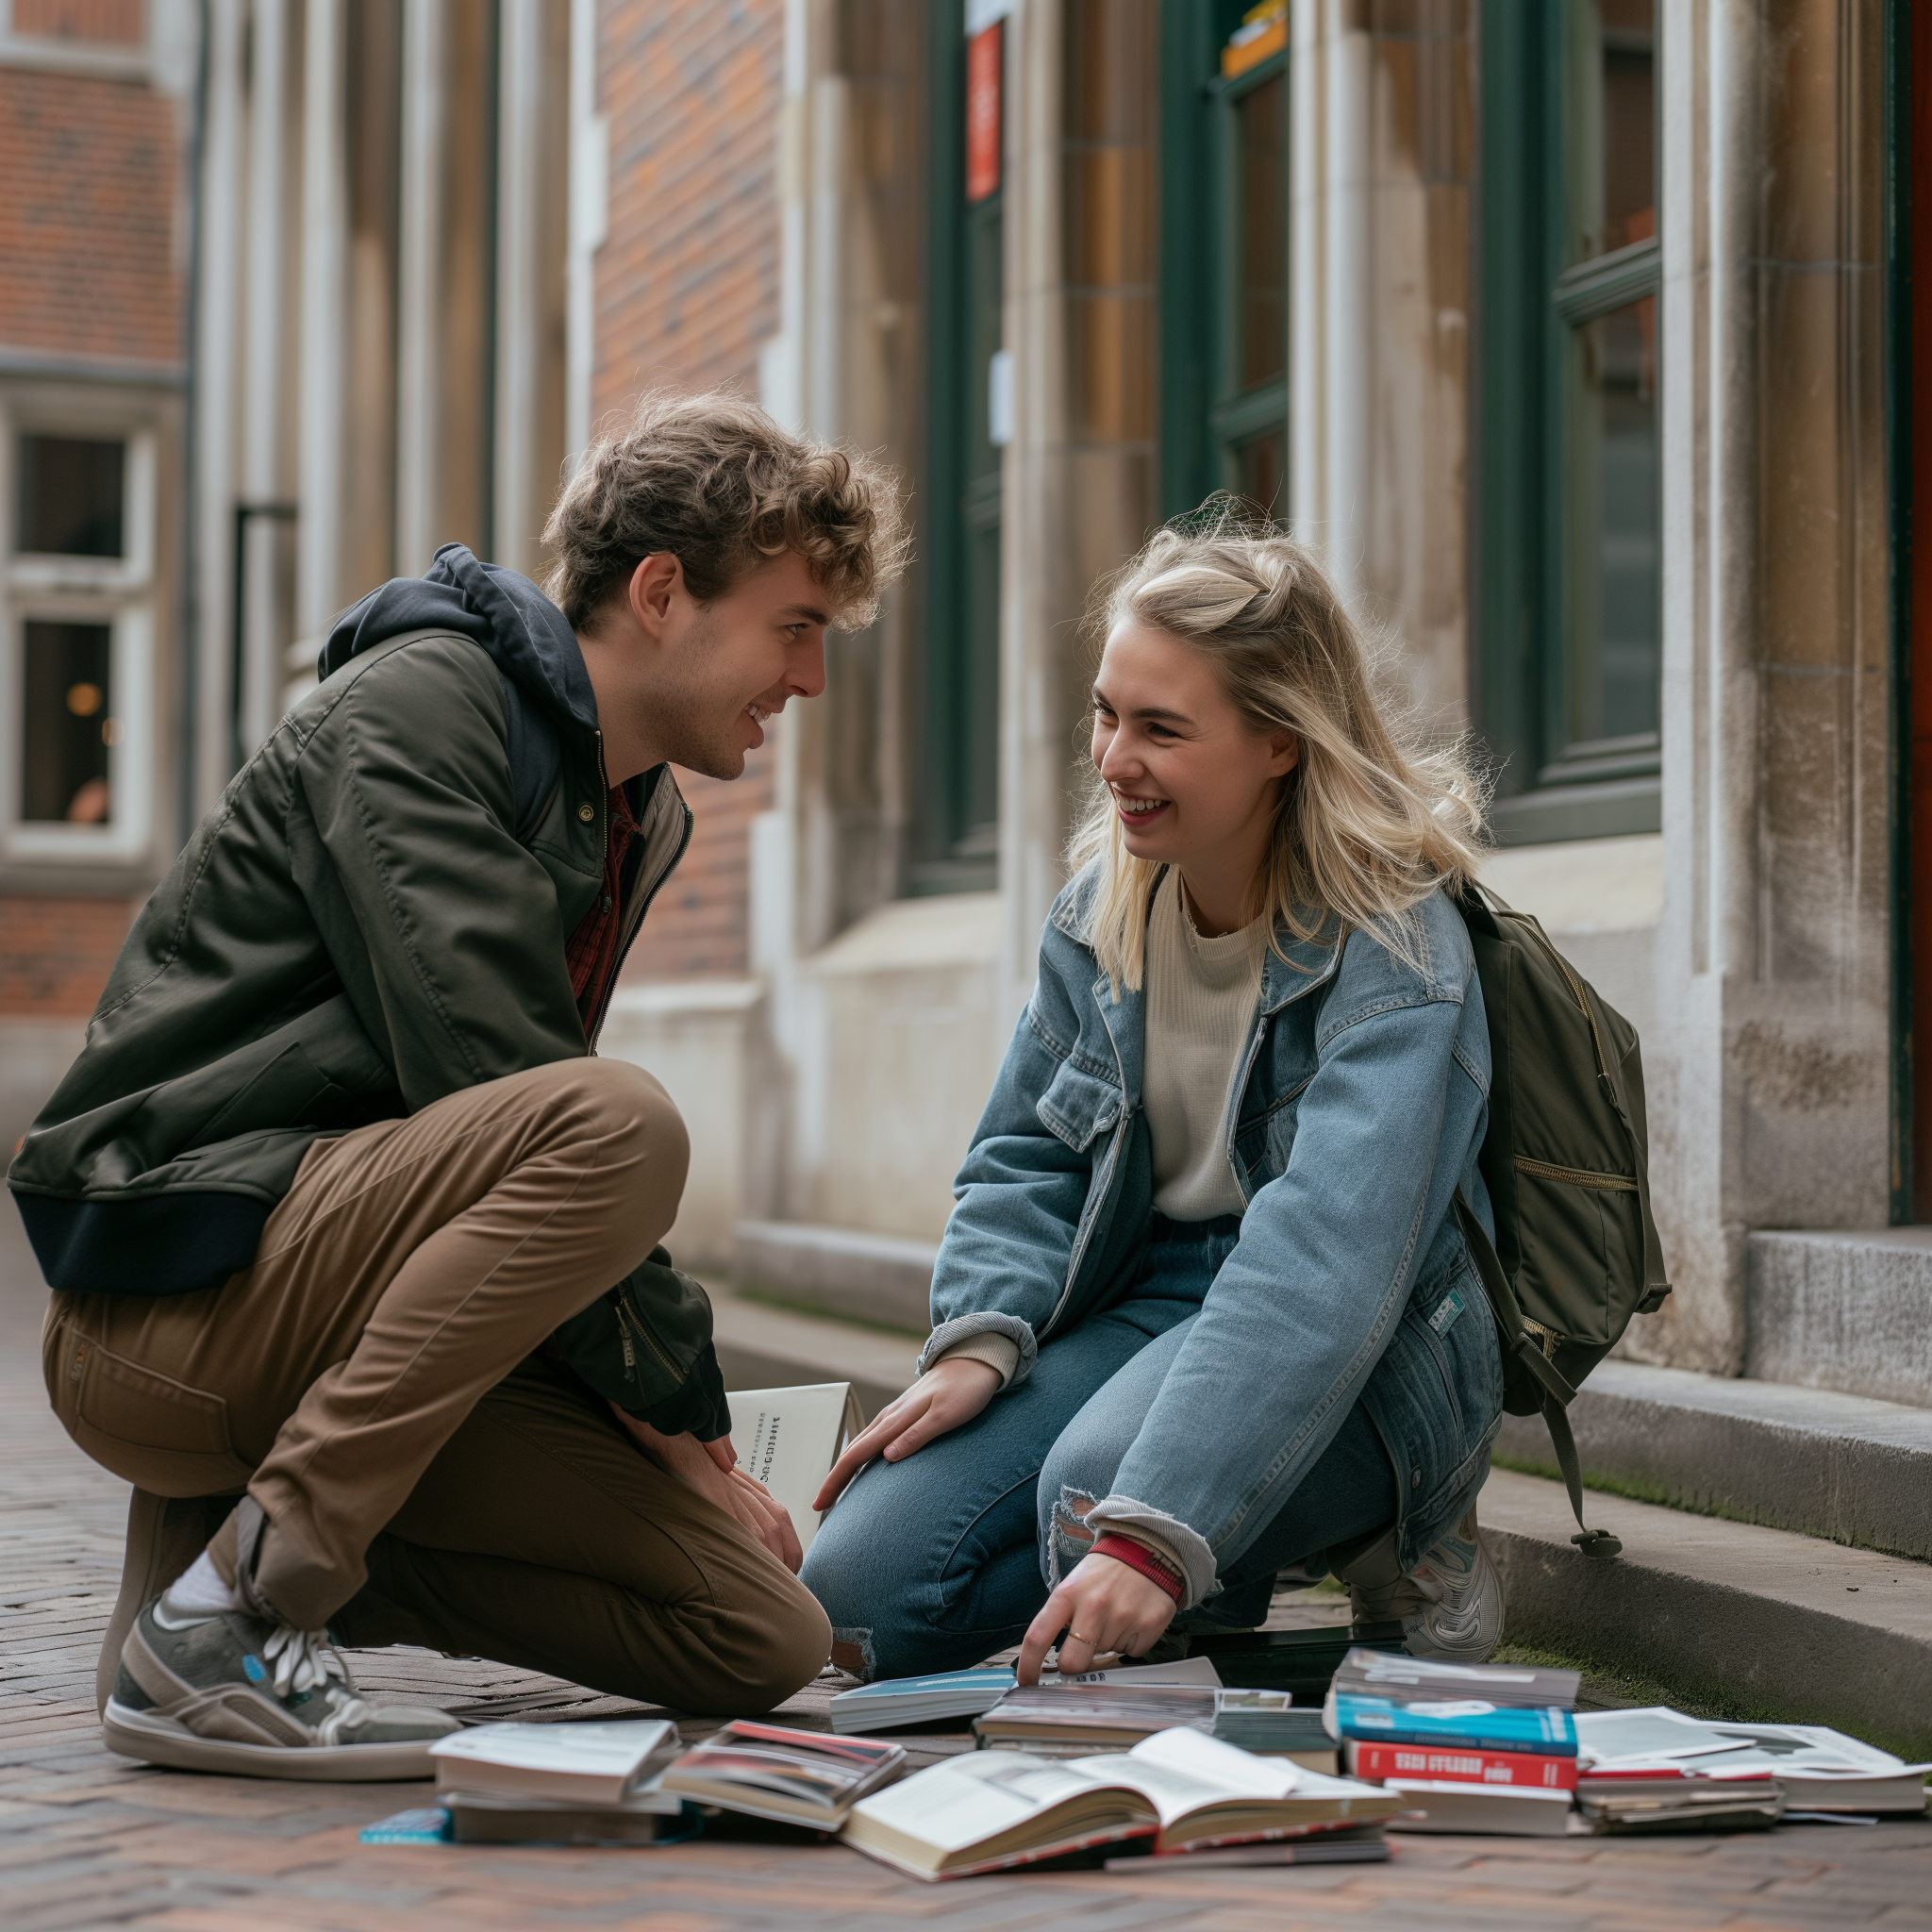 Eine Frau stößt auf einem College-Campus mit einem Mann zusammen und um sie herum sind Bücher verstreut | Quelle: Midjourney